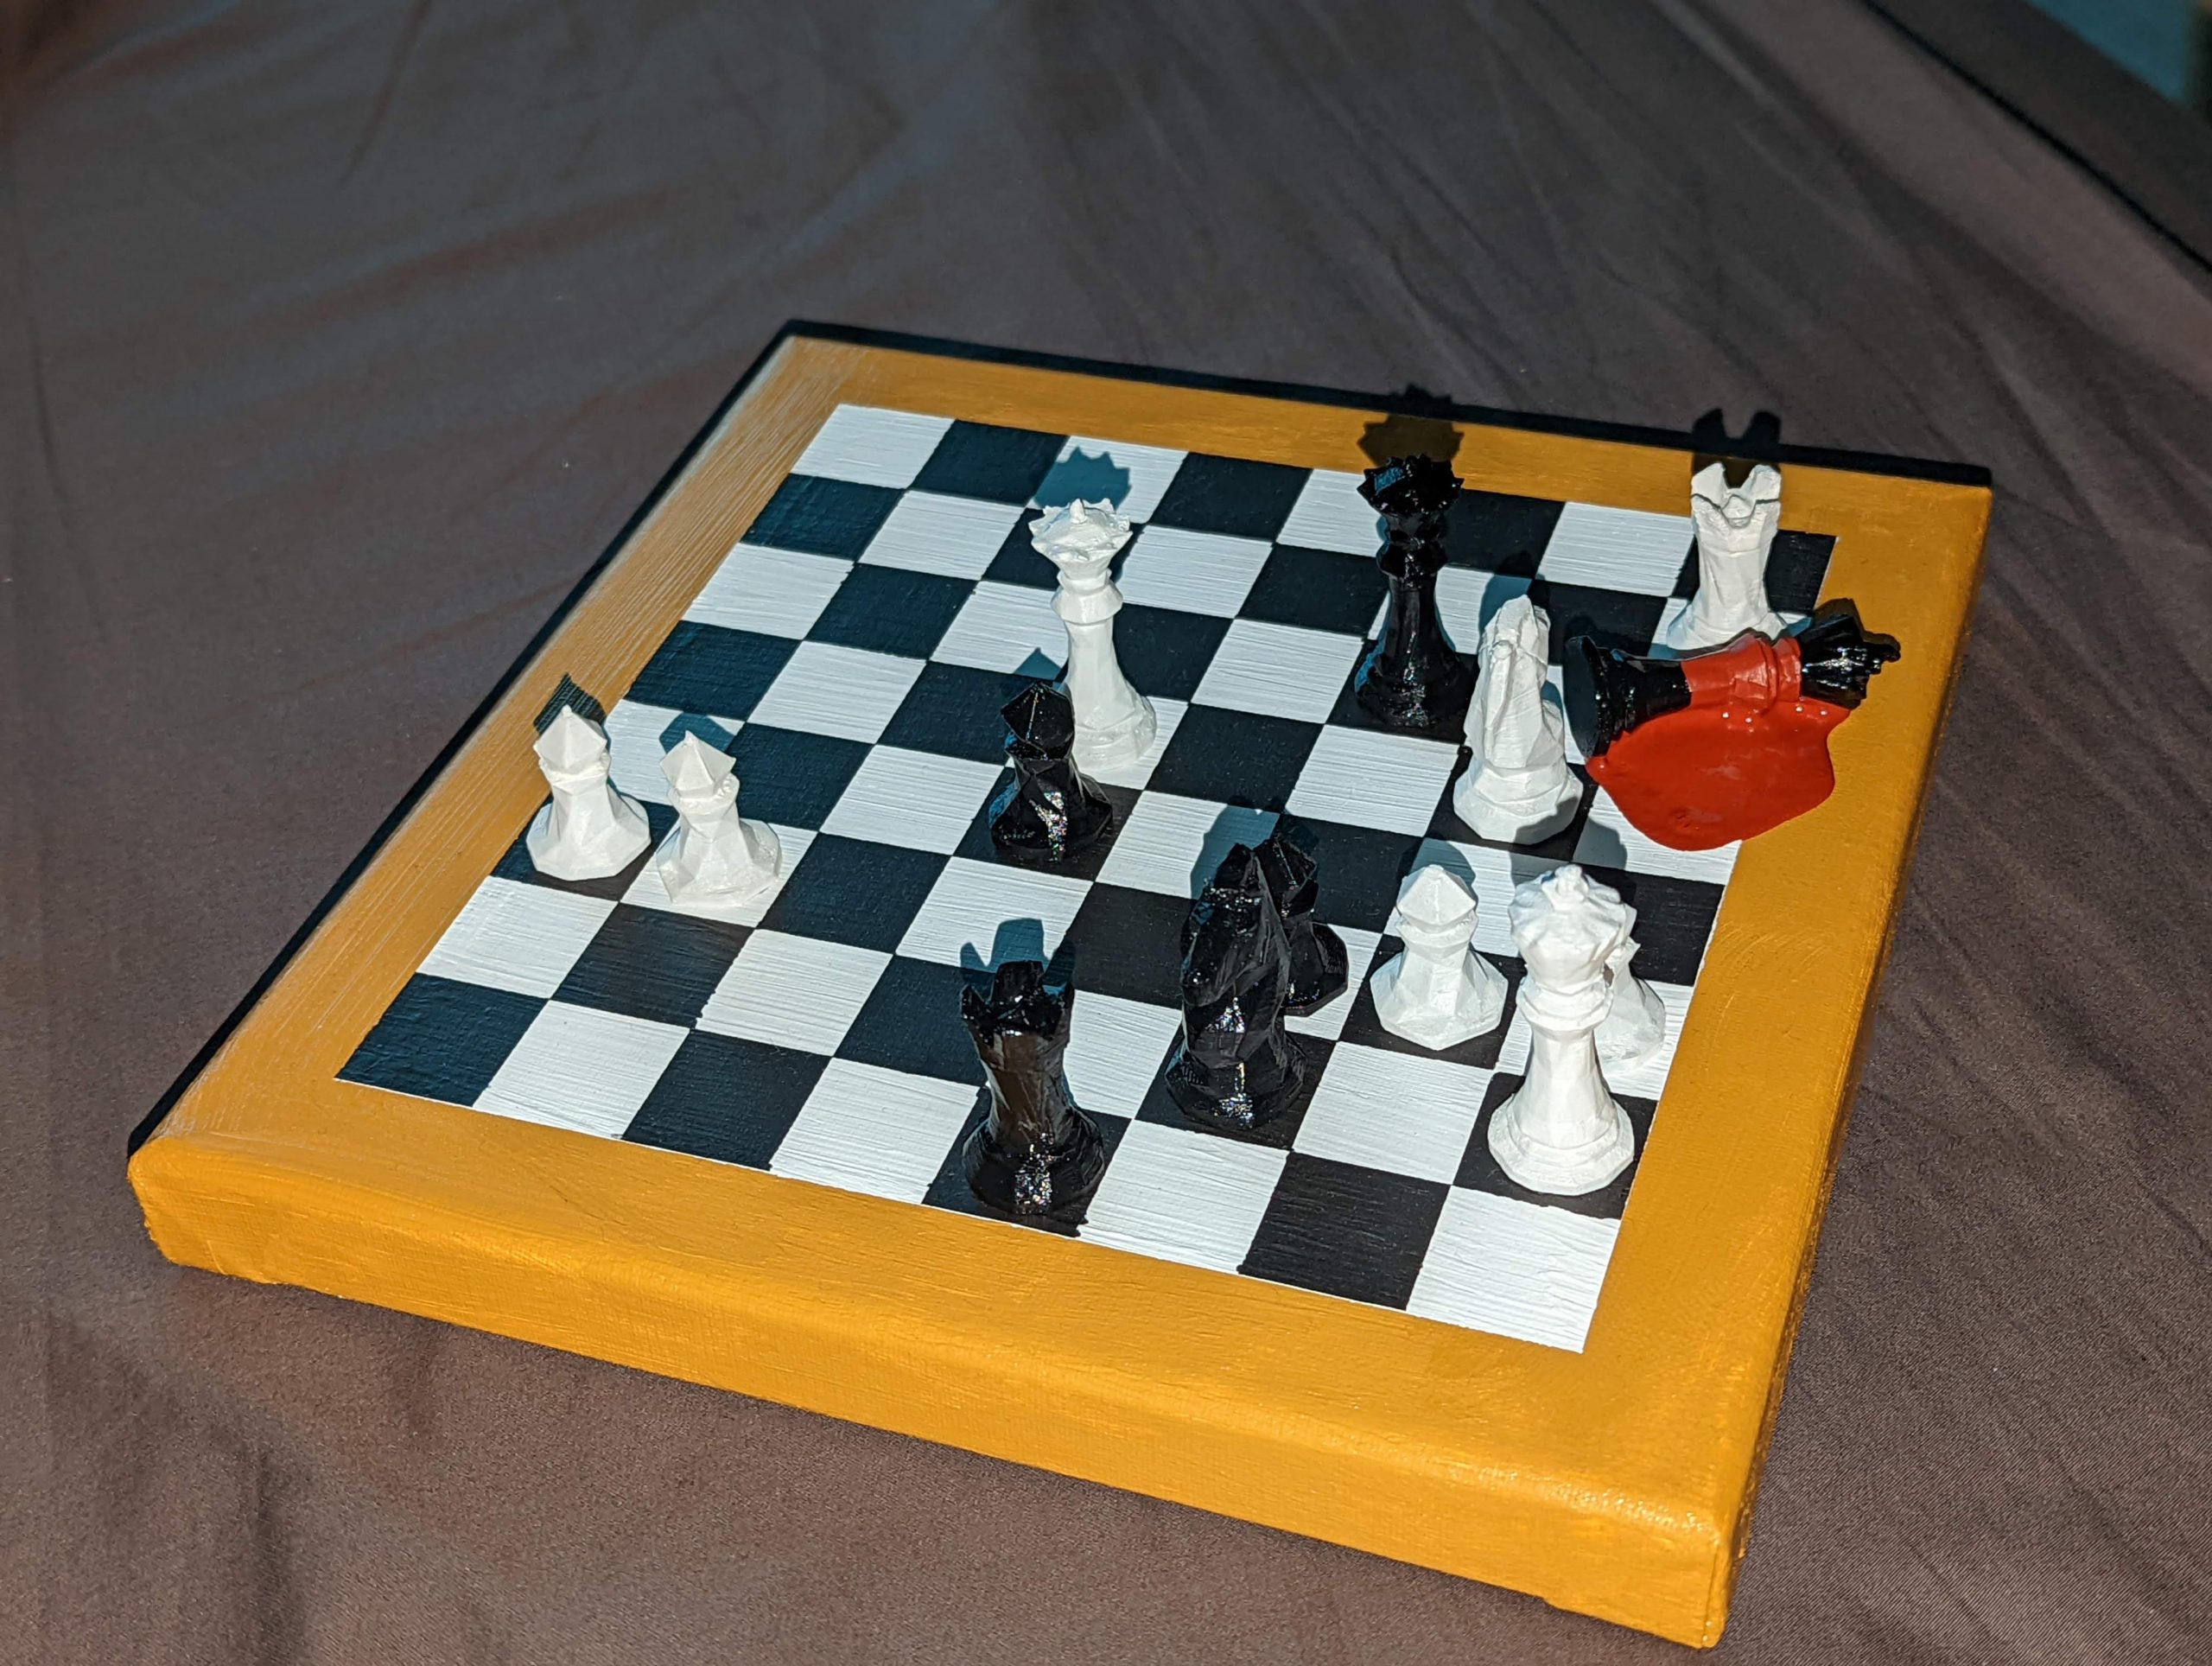 Kasparov versus Deep Blue 1996 - Chessprogramming wiki